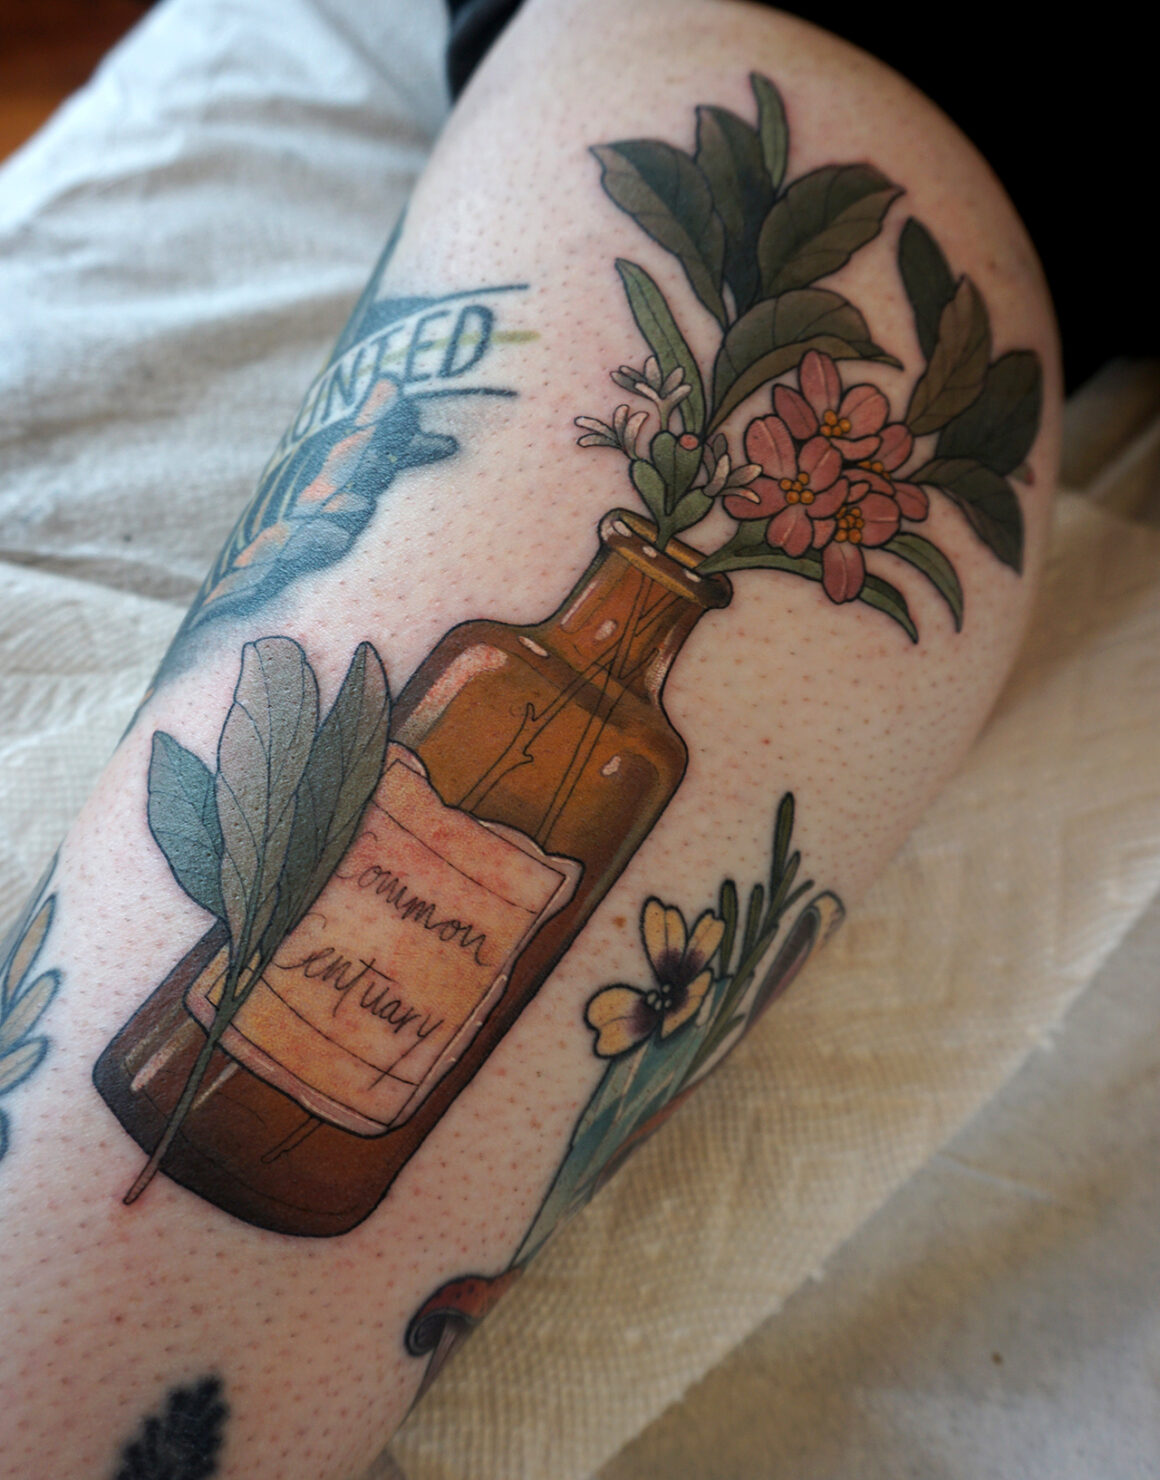 Tattoo by Melise Hill, @melisehilltattoo